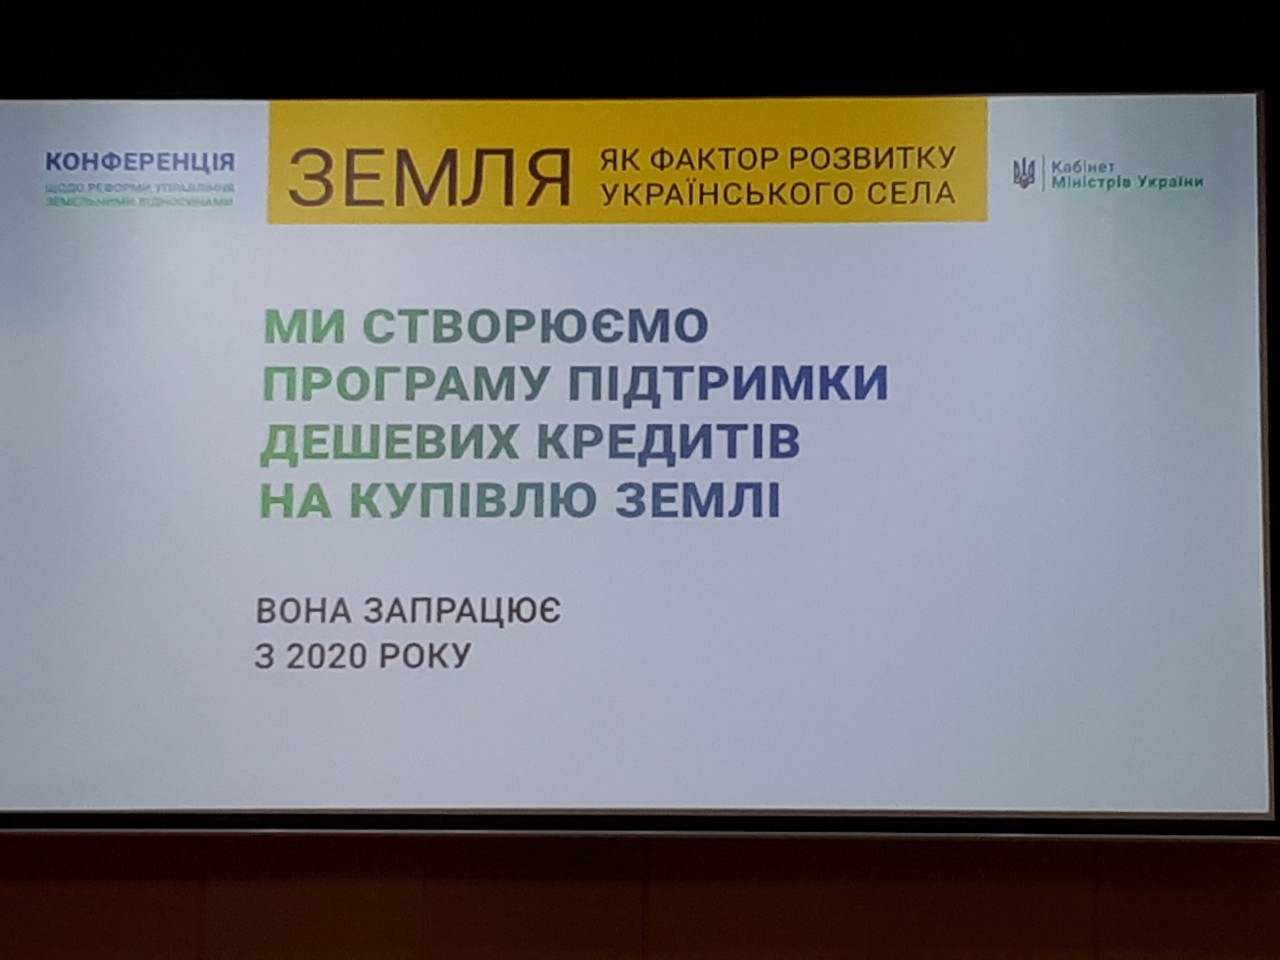 Додатково конференція щодо реформи управління земельними відносинами «Земля як фактор розвитку українського села» 9